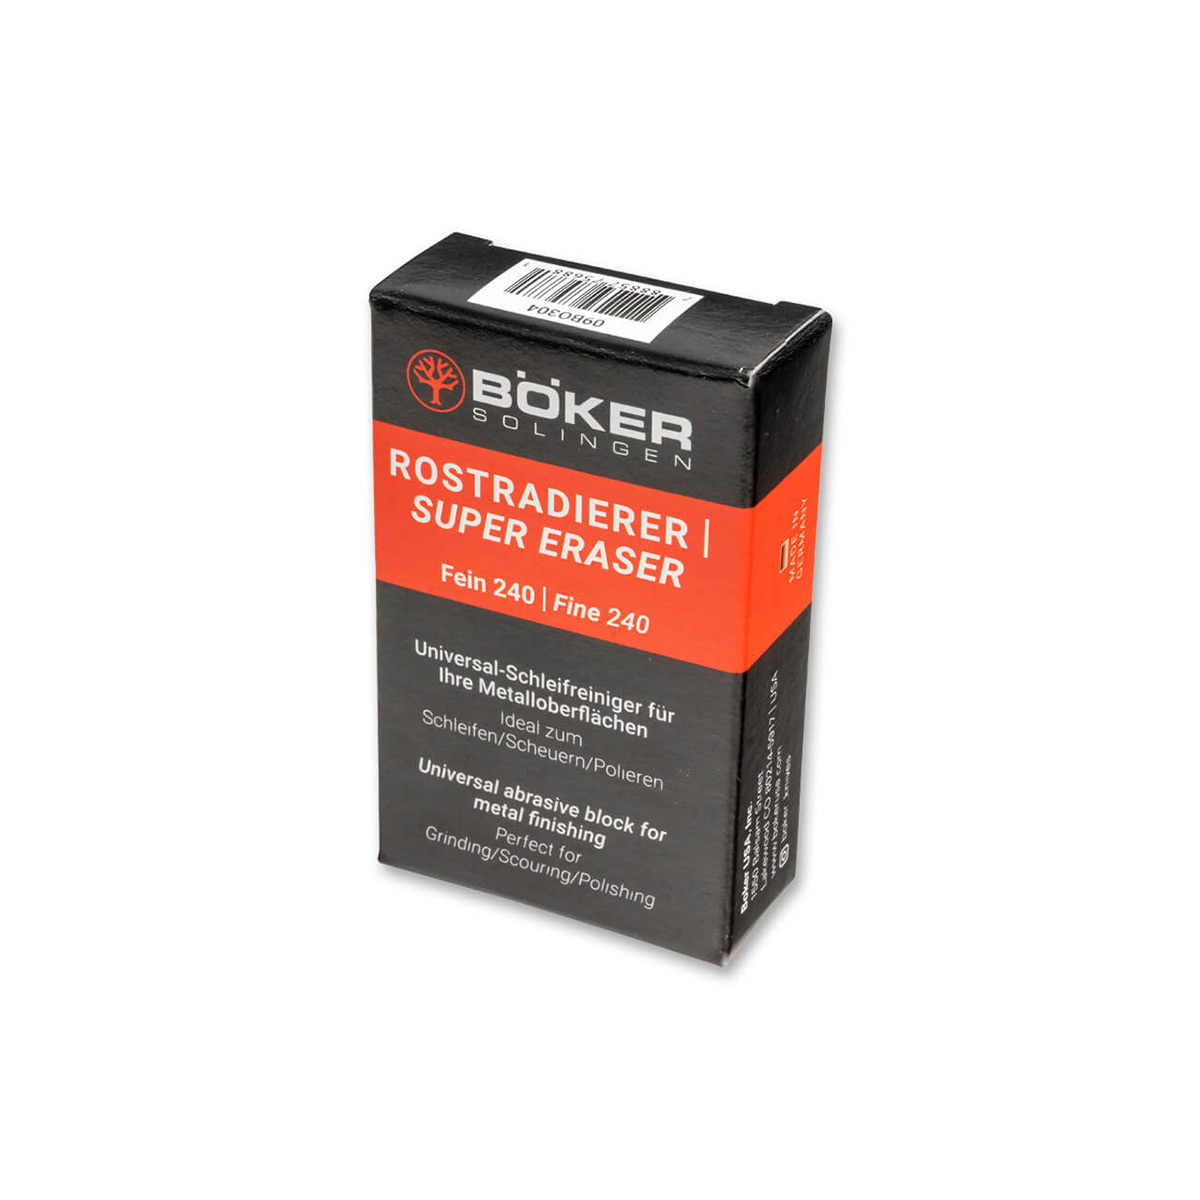         Boker Super Eraser (240 grit)